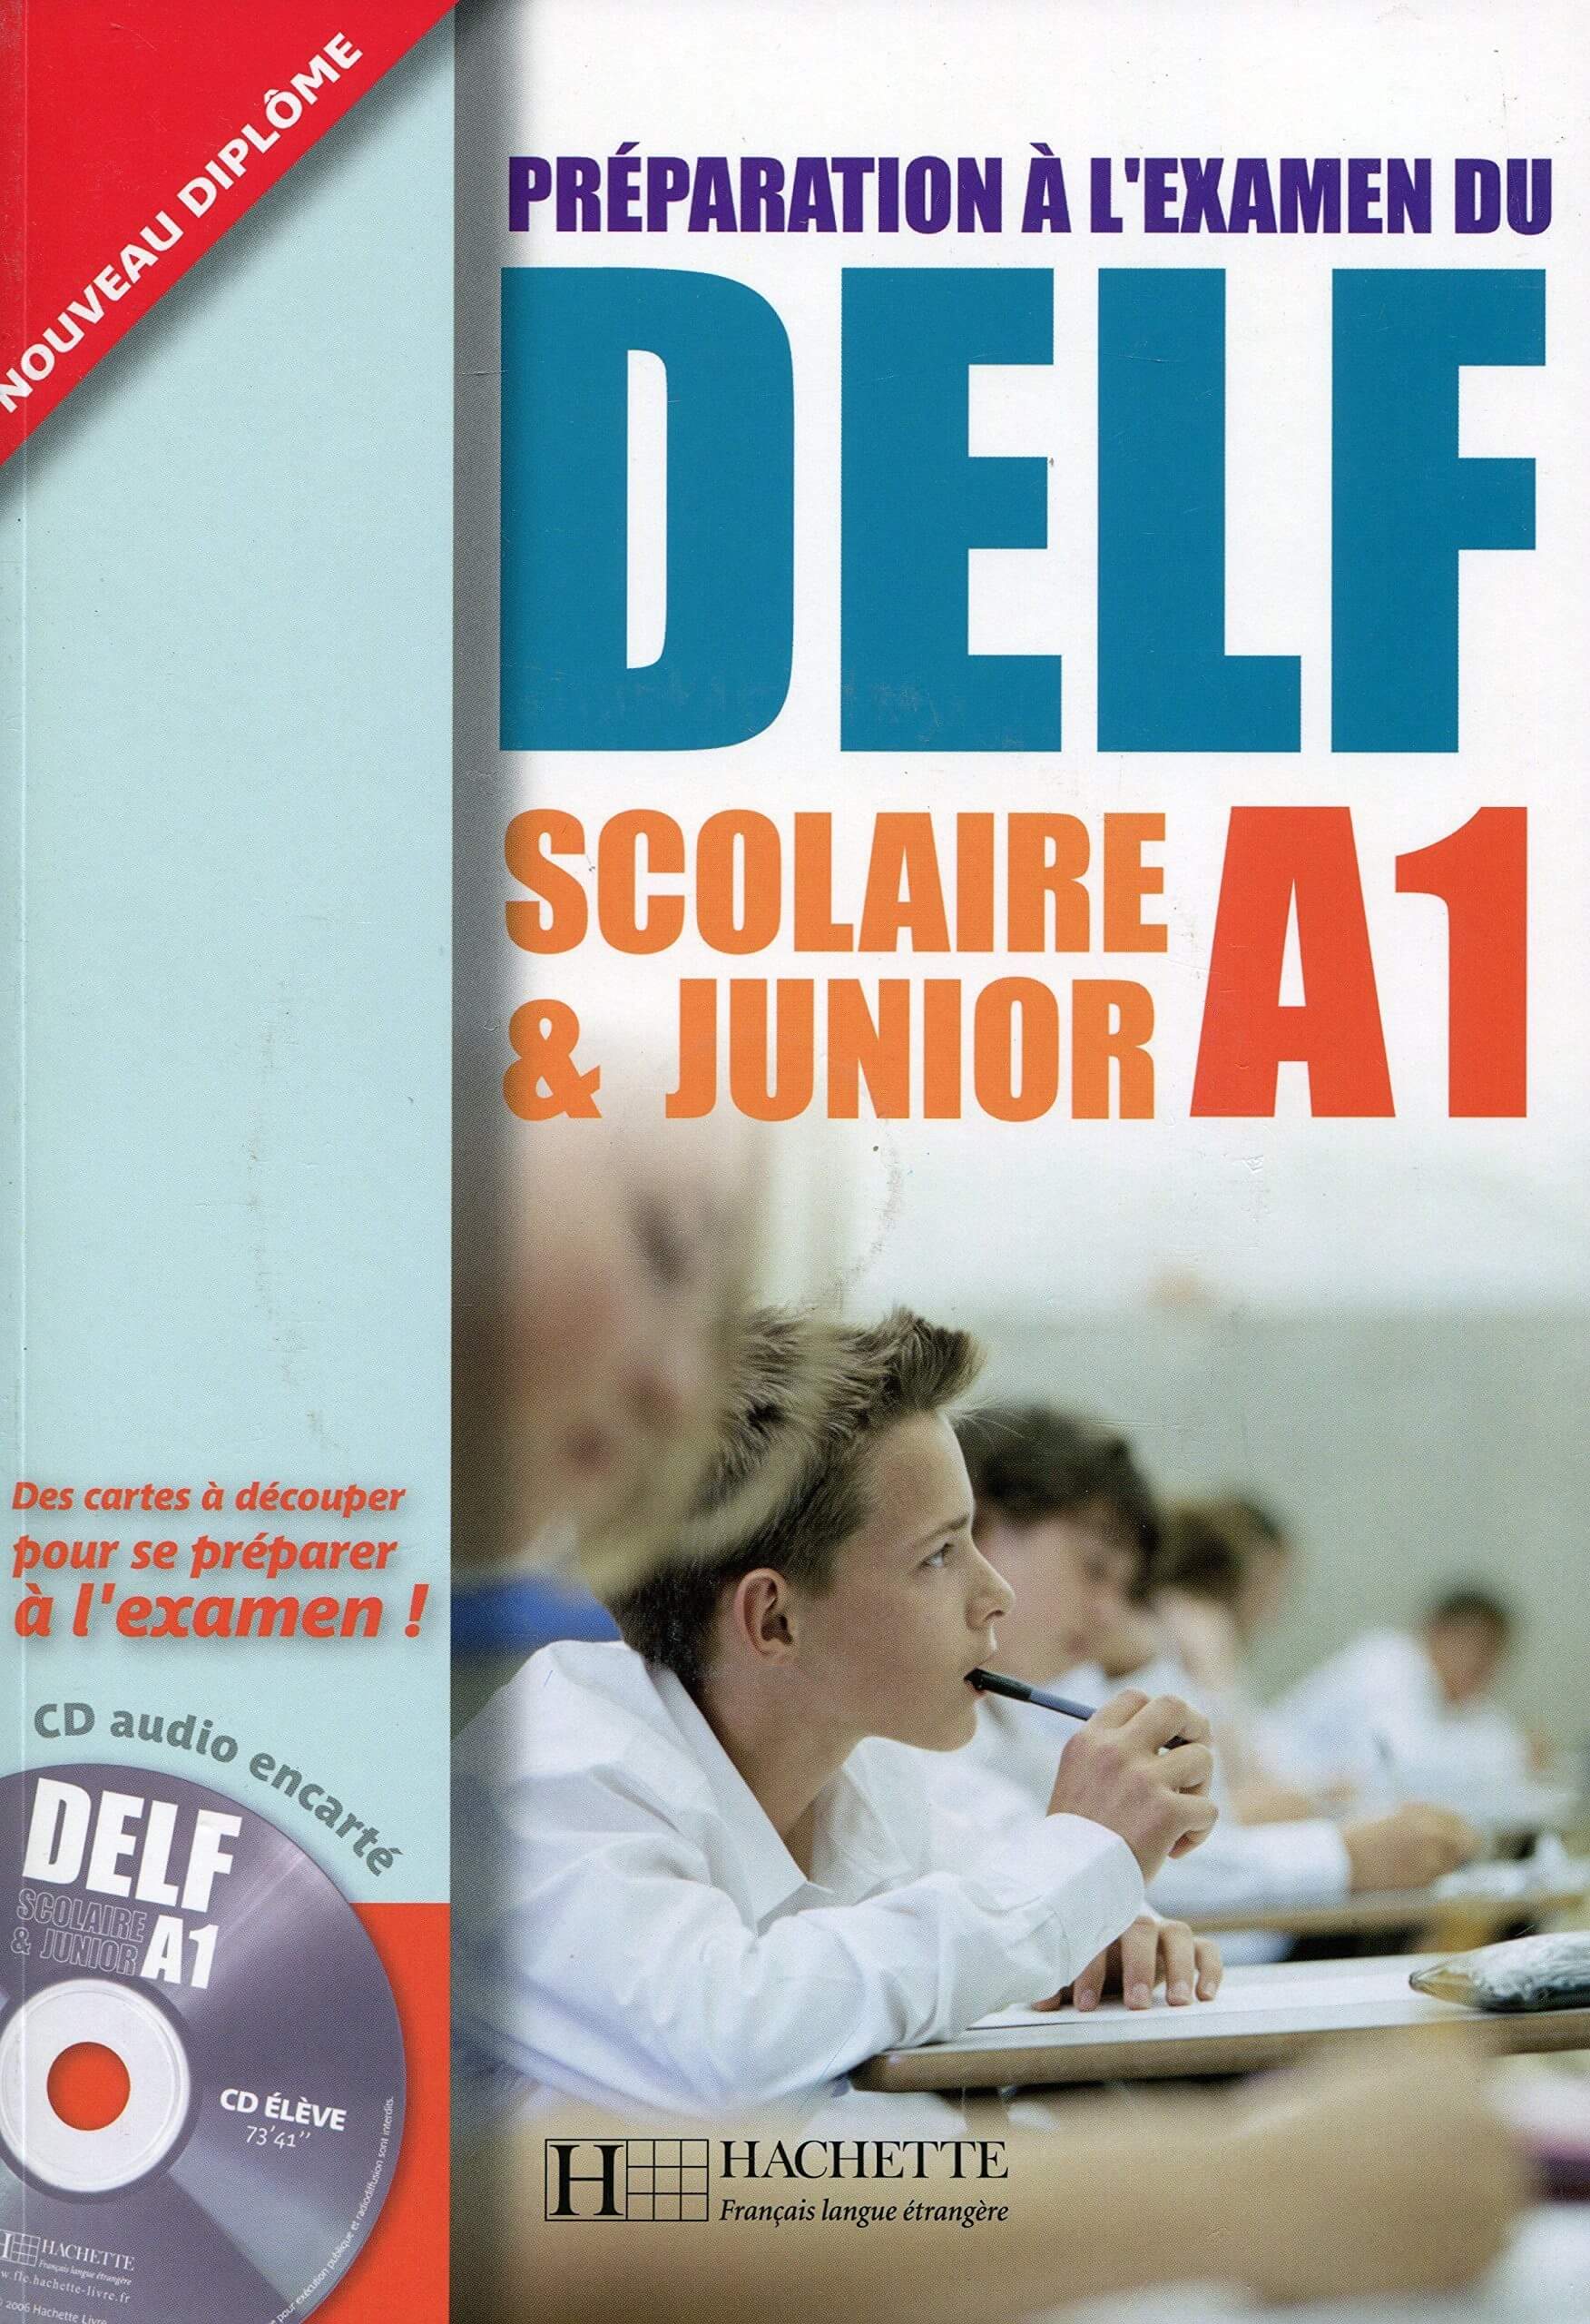 DELF Scolaire & Junior A1 (picture version)